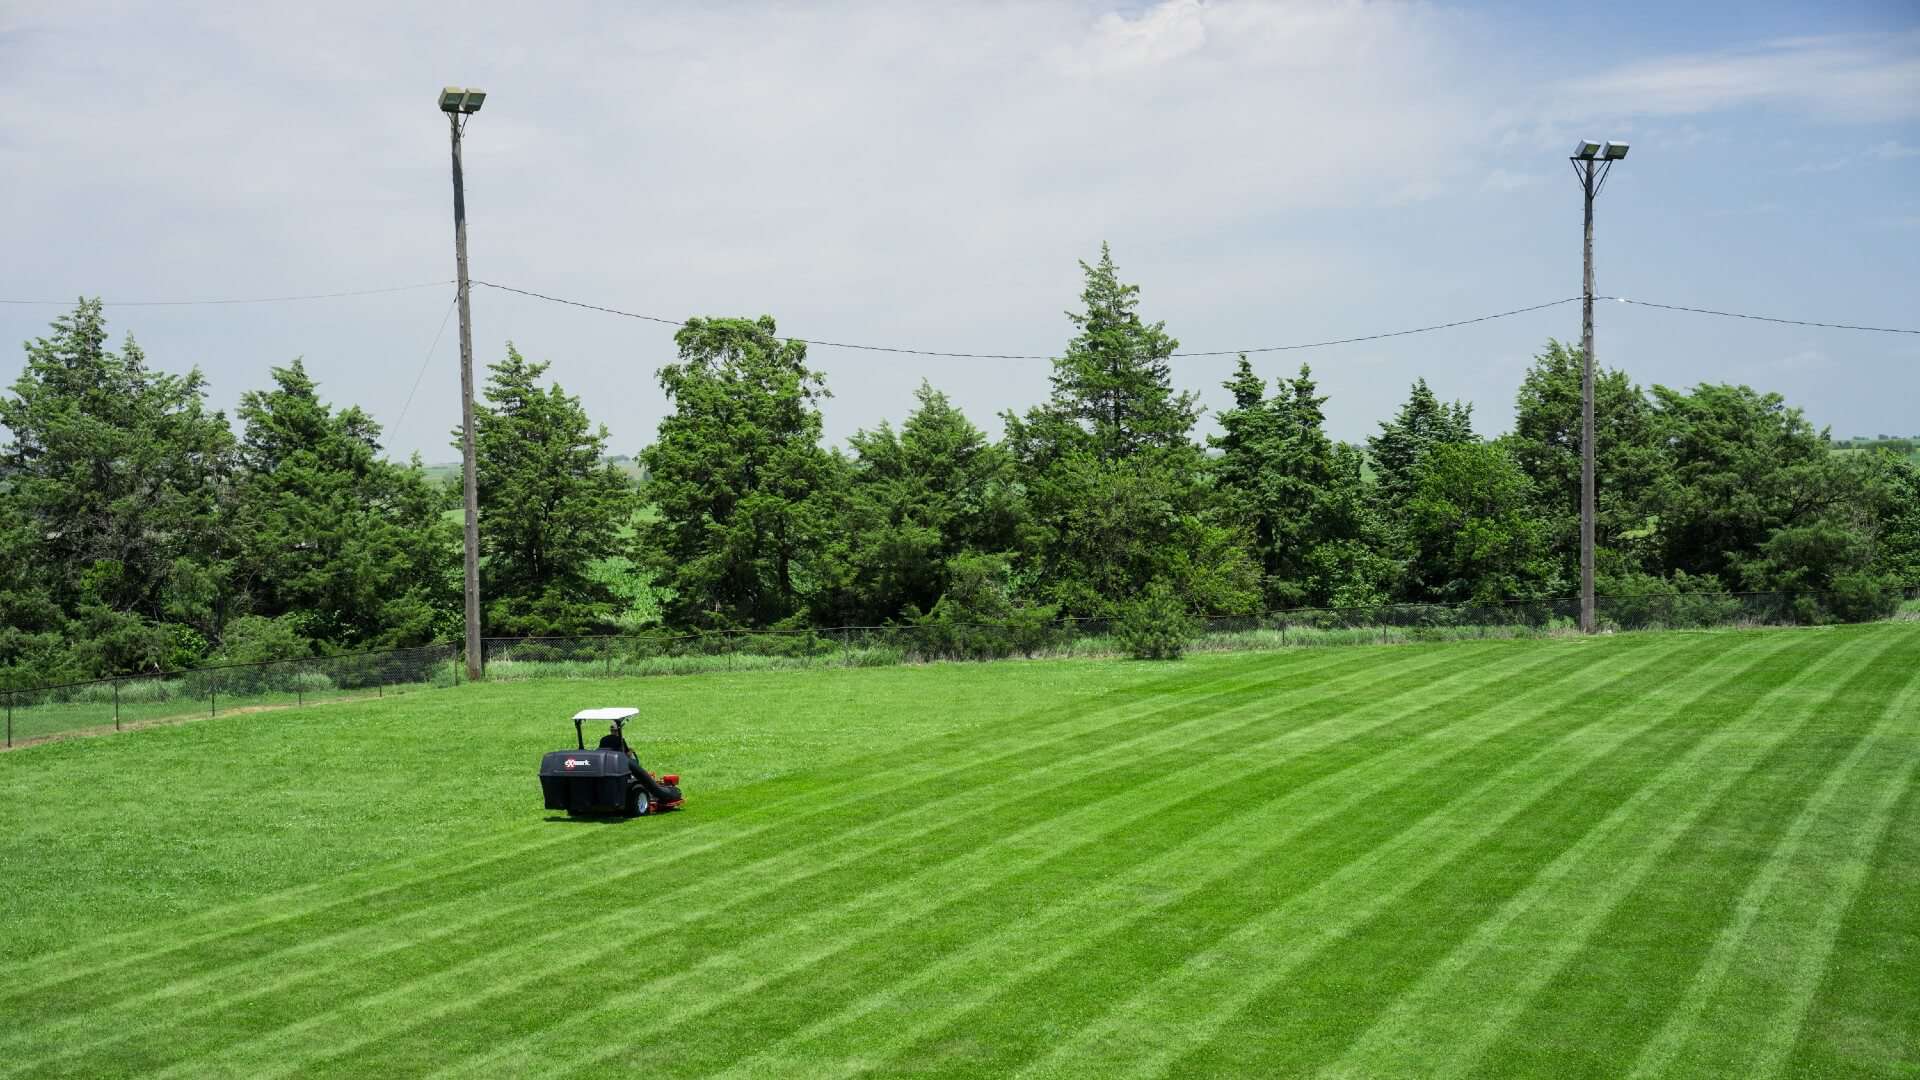 An Exmark mower striping a lawn